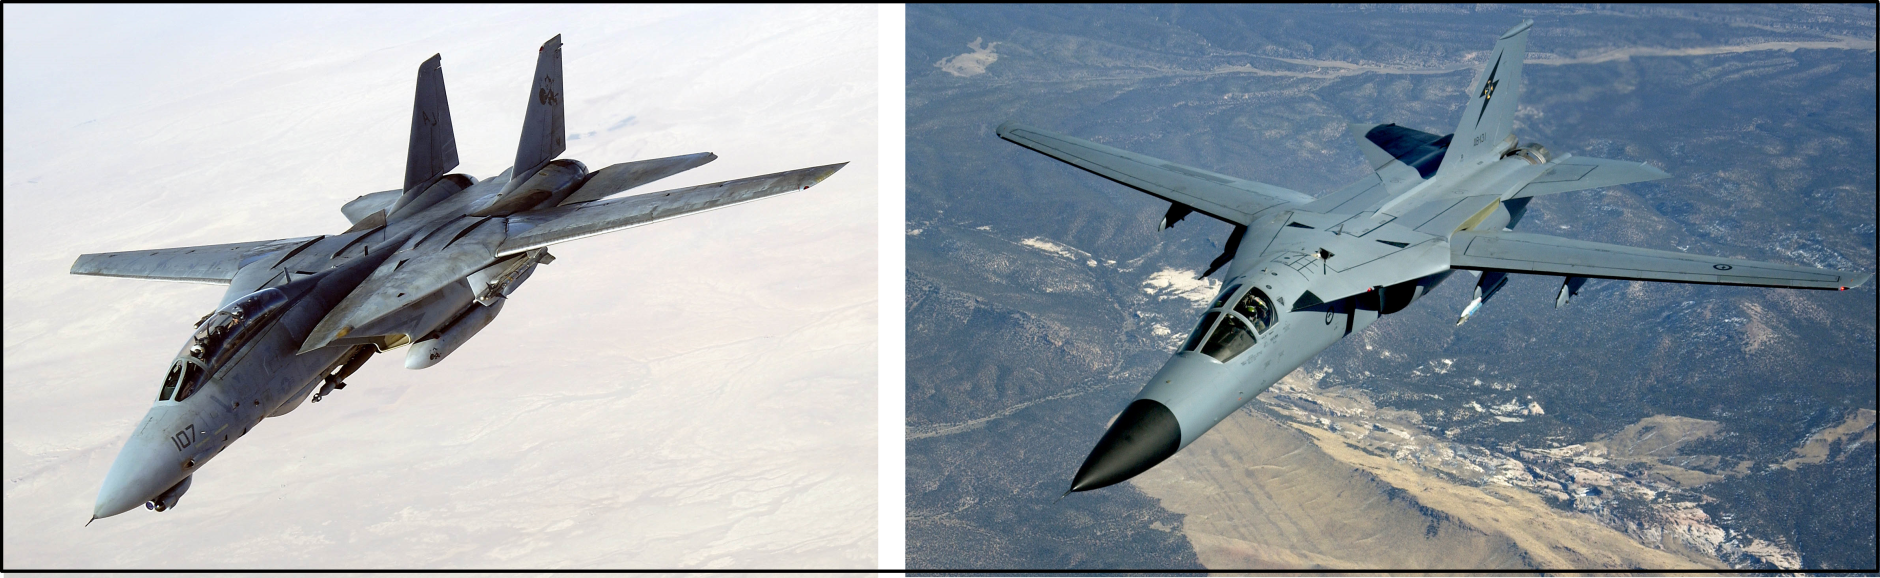 Η εικόνα δεν εμφανίζεται/Image is not displayed - Μαχητικά αεροσκάφη F-14 του Πολεμικού Ναυτικού των ΗΠΑ και F-111 της Πολεμικής Αεροπορίας των ΗΠΑ / F-14, F-111, USA, military aircrafts, two fin